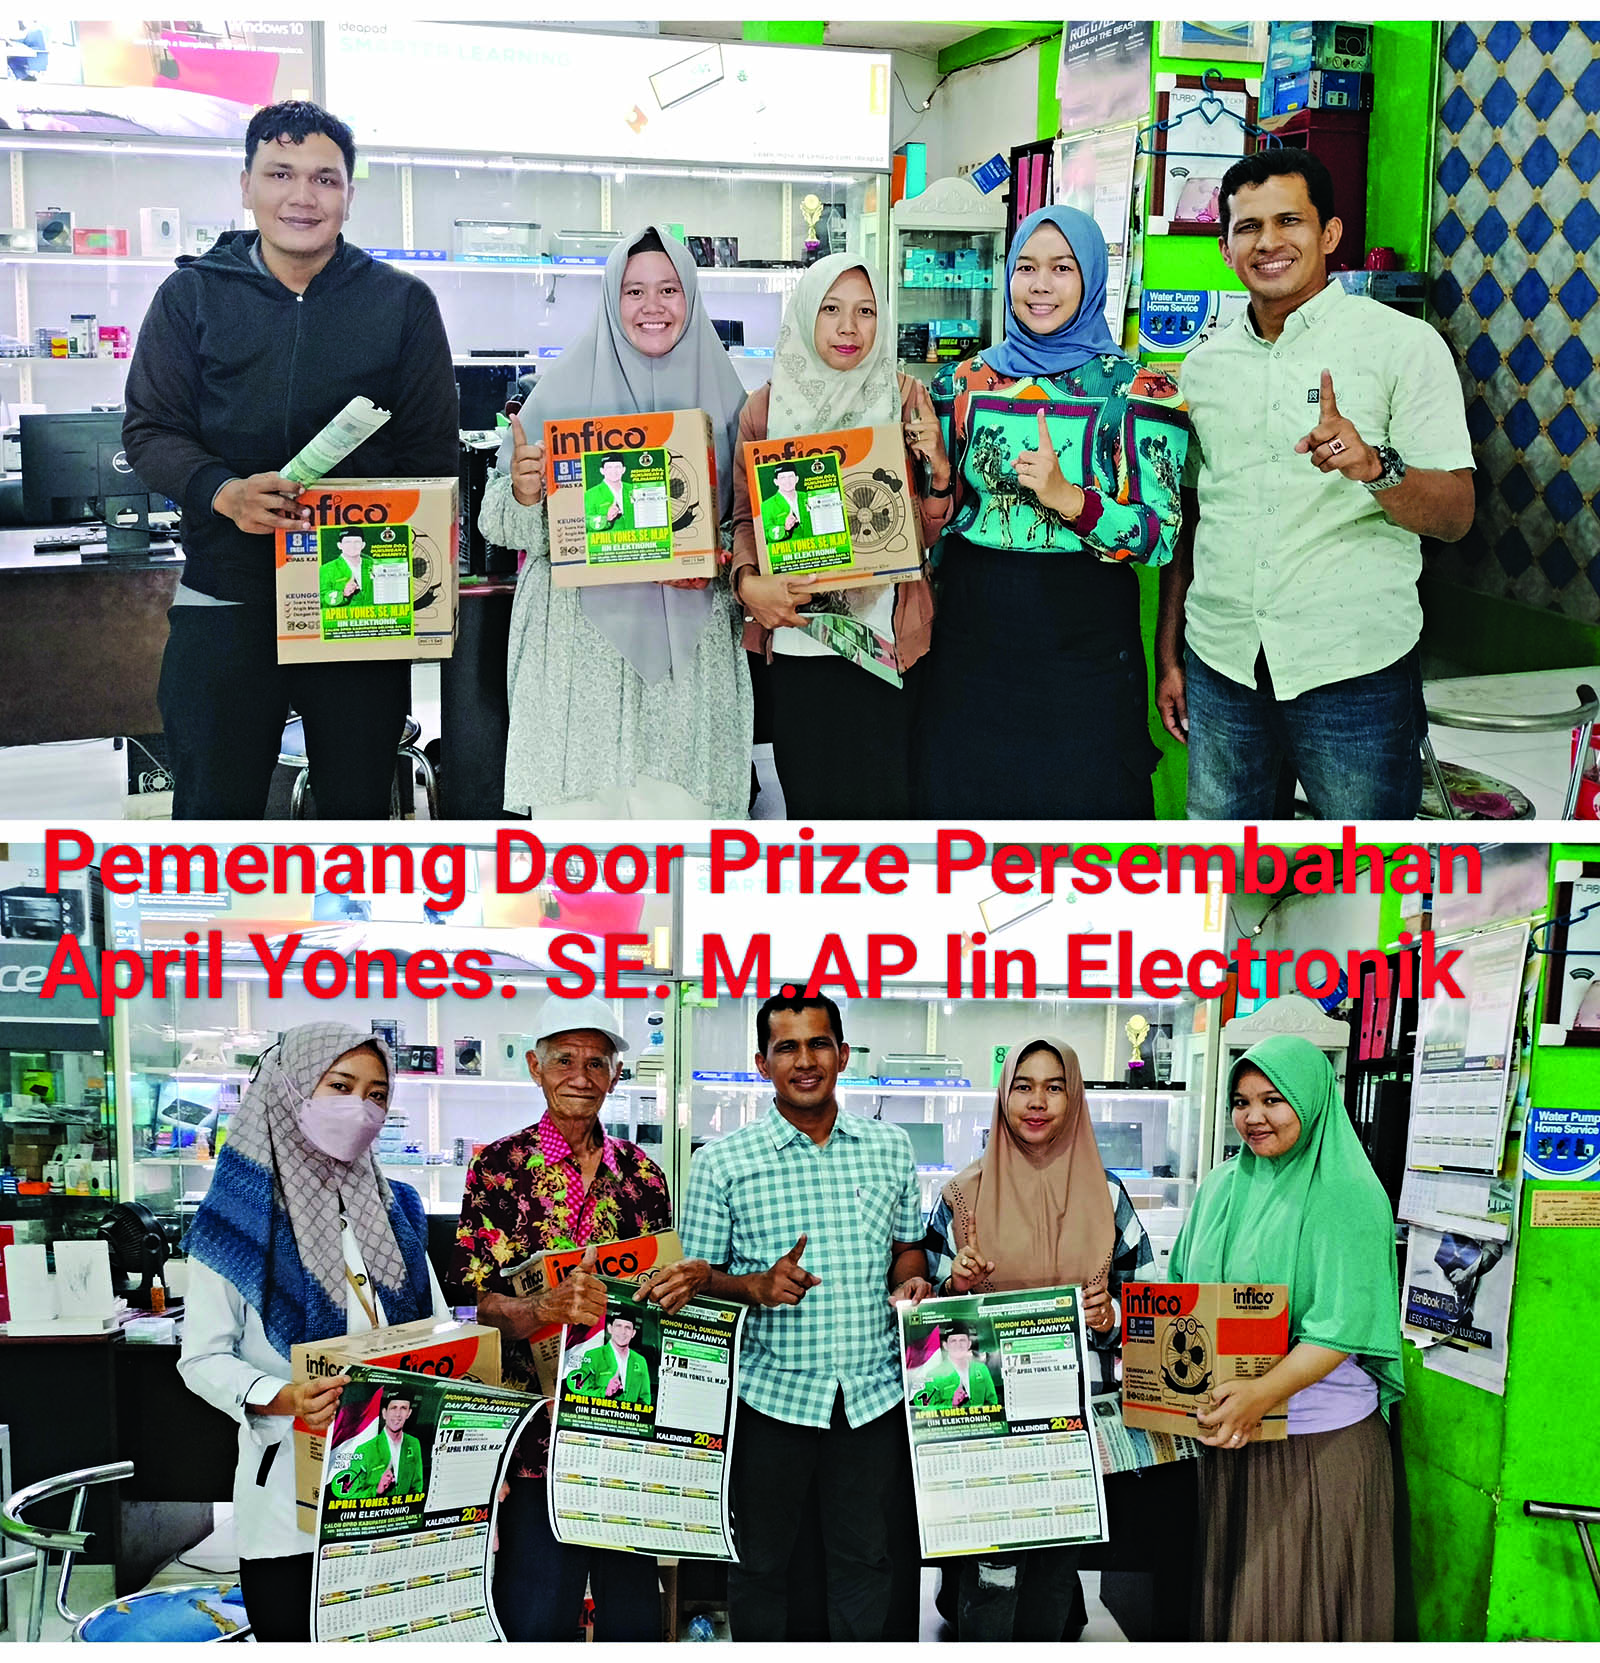 Door Prize Persembahan April Yones.SE. M.AP Untuk Pelanggan Iin Electronik 